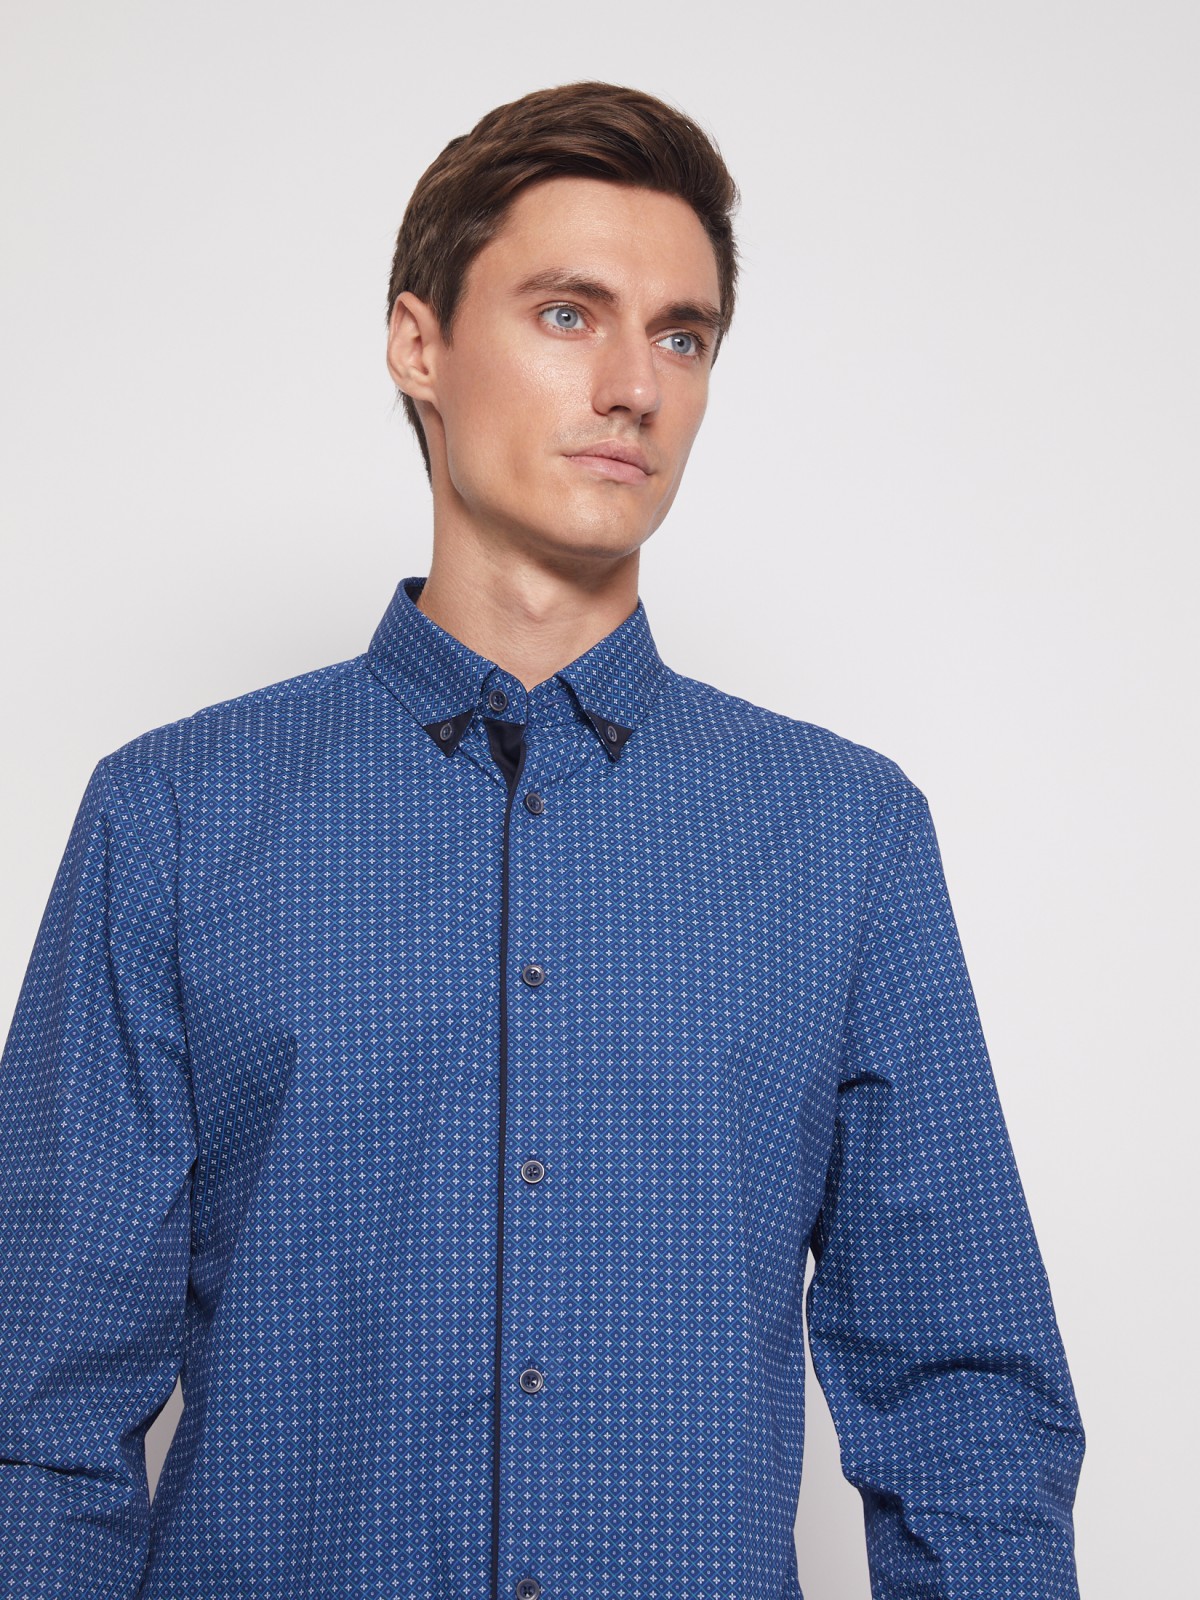 Хлопковая рубашка с мелким принтом zolla 011452159013, цвет голубой, размер M - фото 3